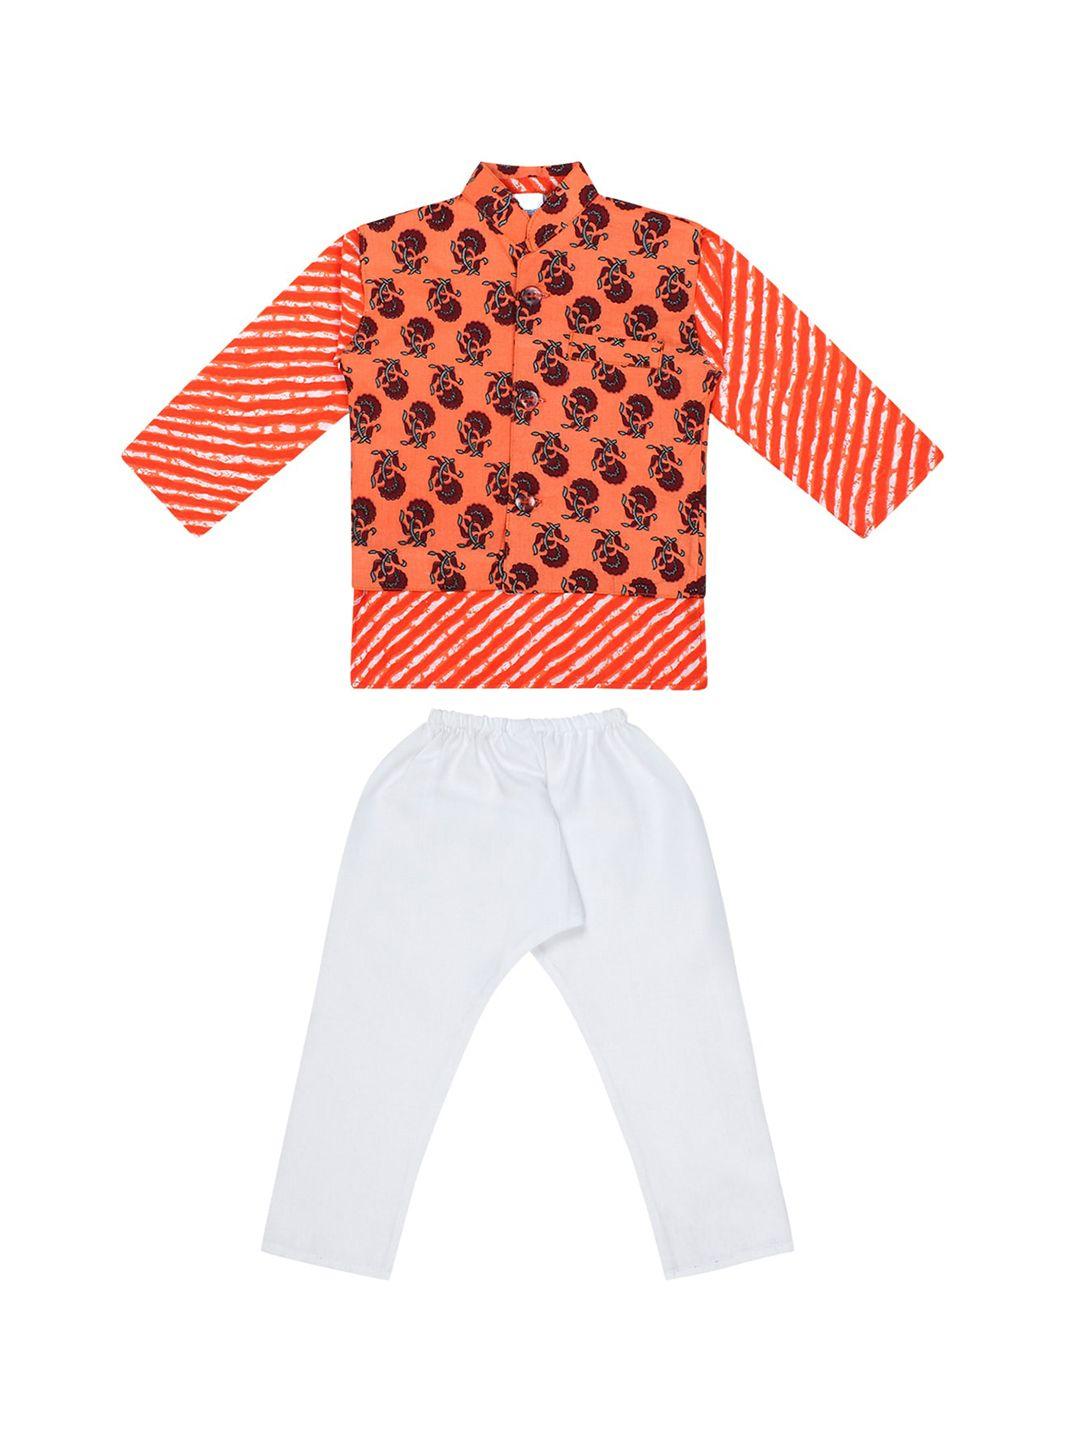 superminis boys orange & black floral printed pure cotton kurta with pyjamas